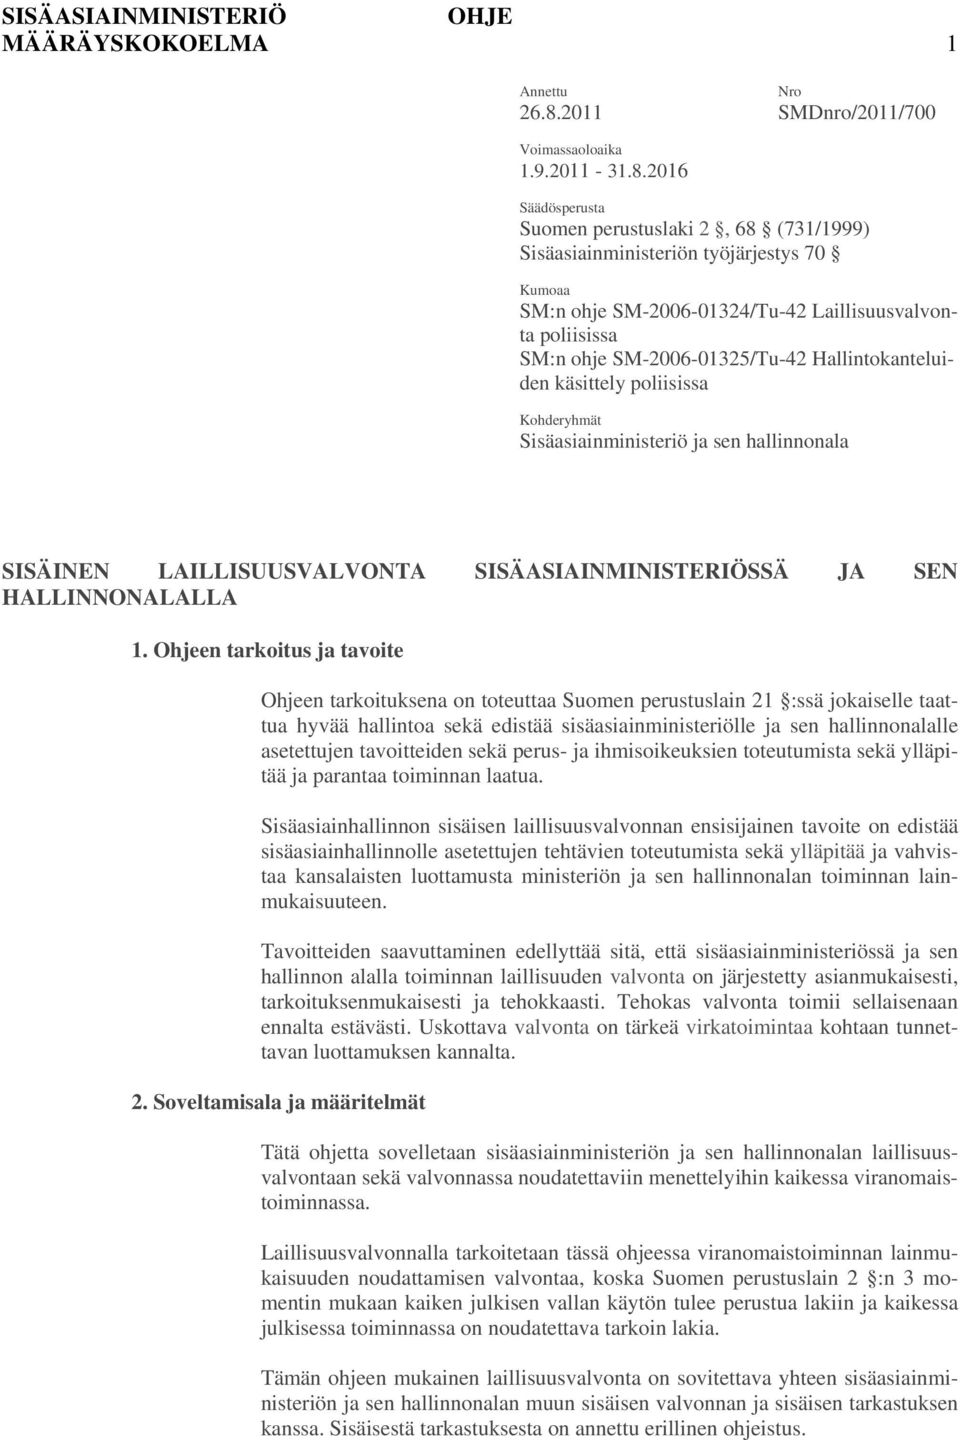 2016 Säädösperusta Suomen perustuslaki 2, 68 (731/1999) Sisäasiainministeriön työjärjestys 70 Kumoaa SM:n ohje SM-2006-01324/Tu-42 Laillisuusvalvonta poliisissa SM:n ohje SM-2006-01325/Tu-42